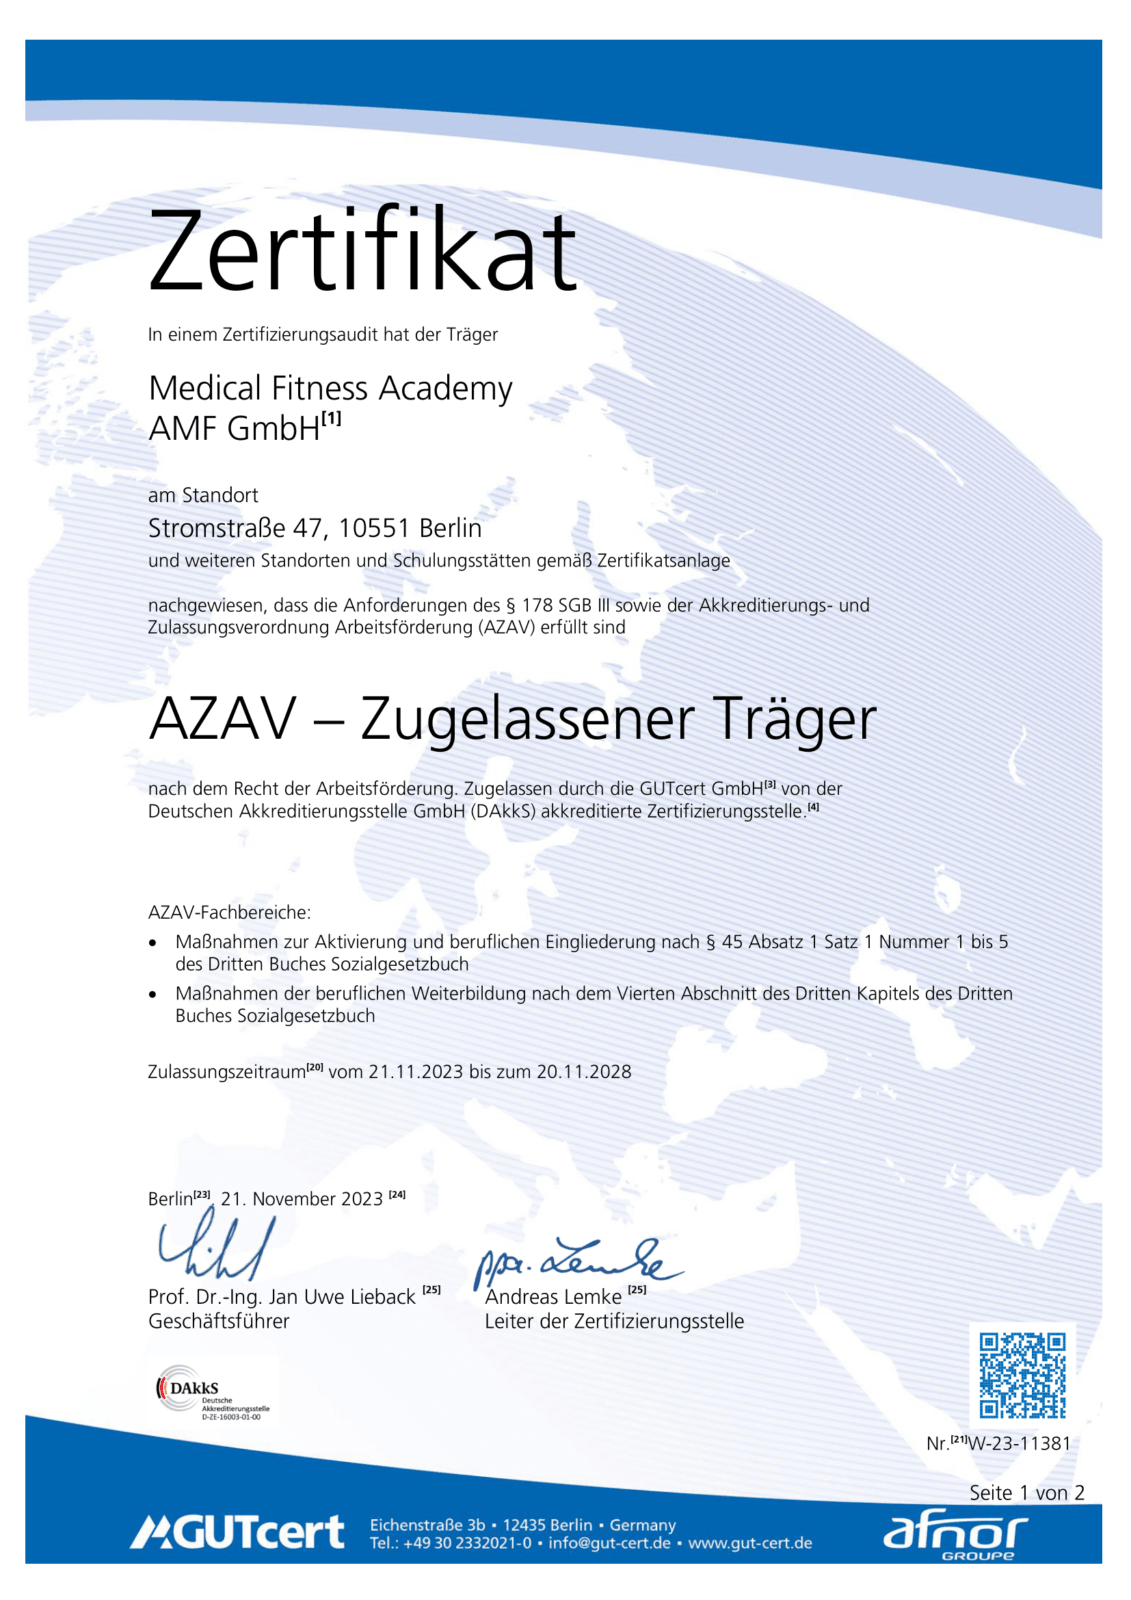 azav-zugelassener-traeger-zertifikat